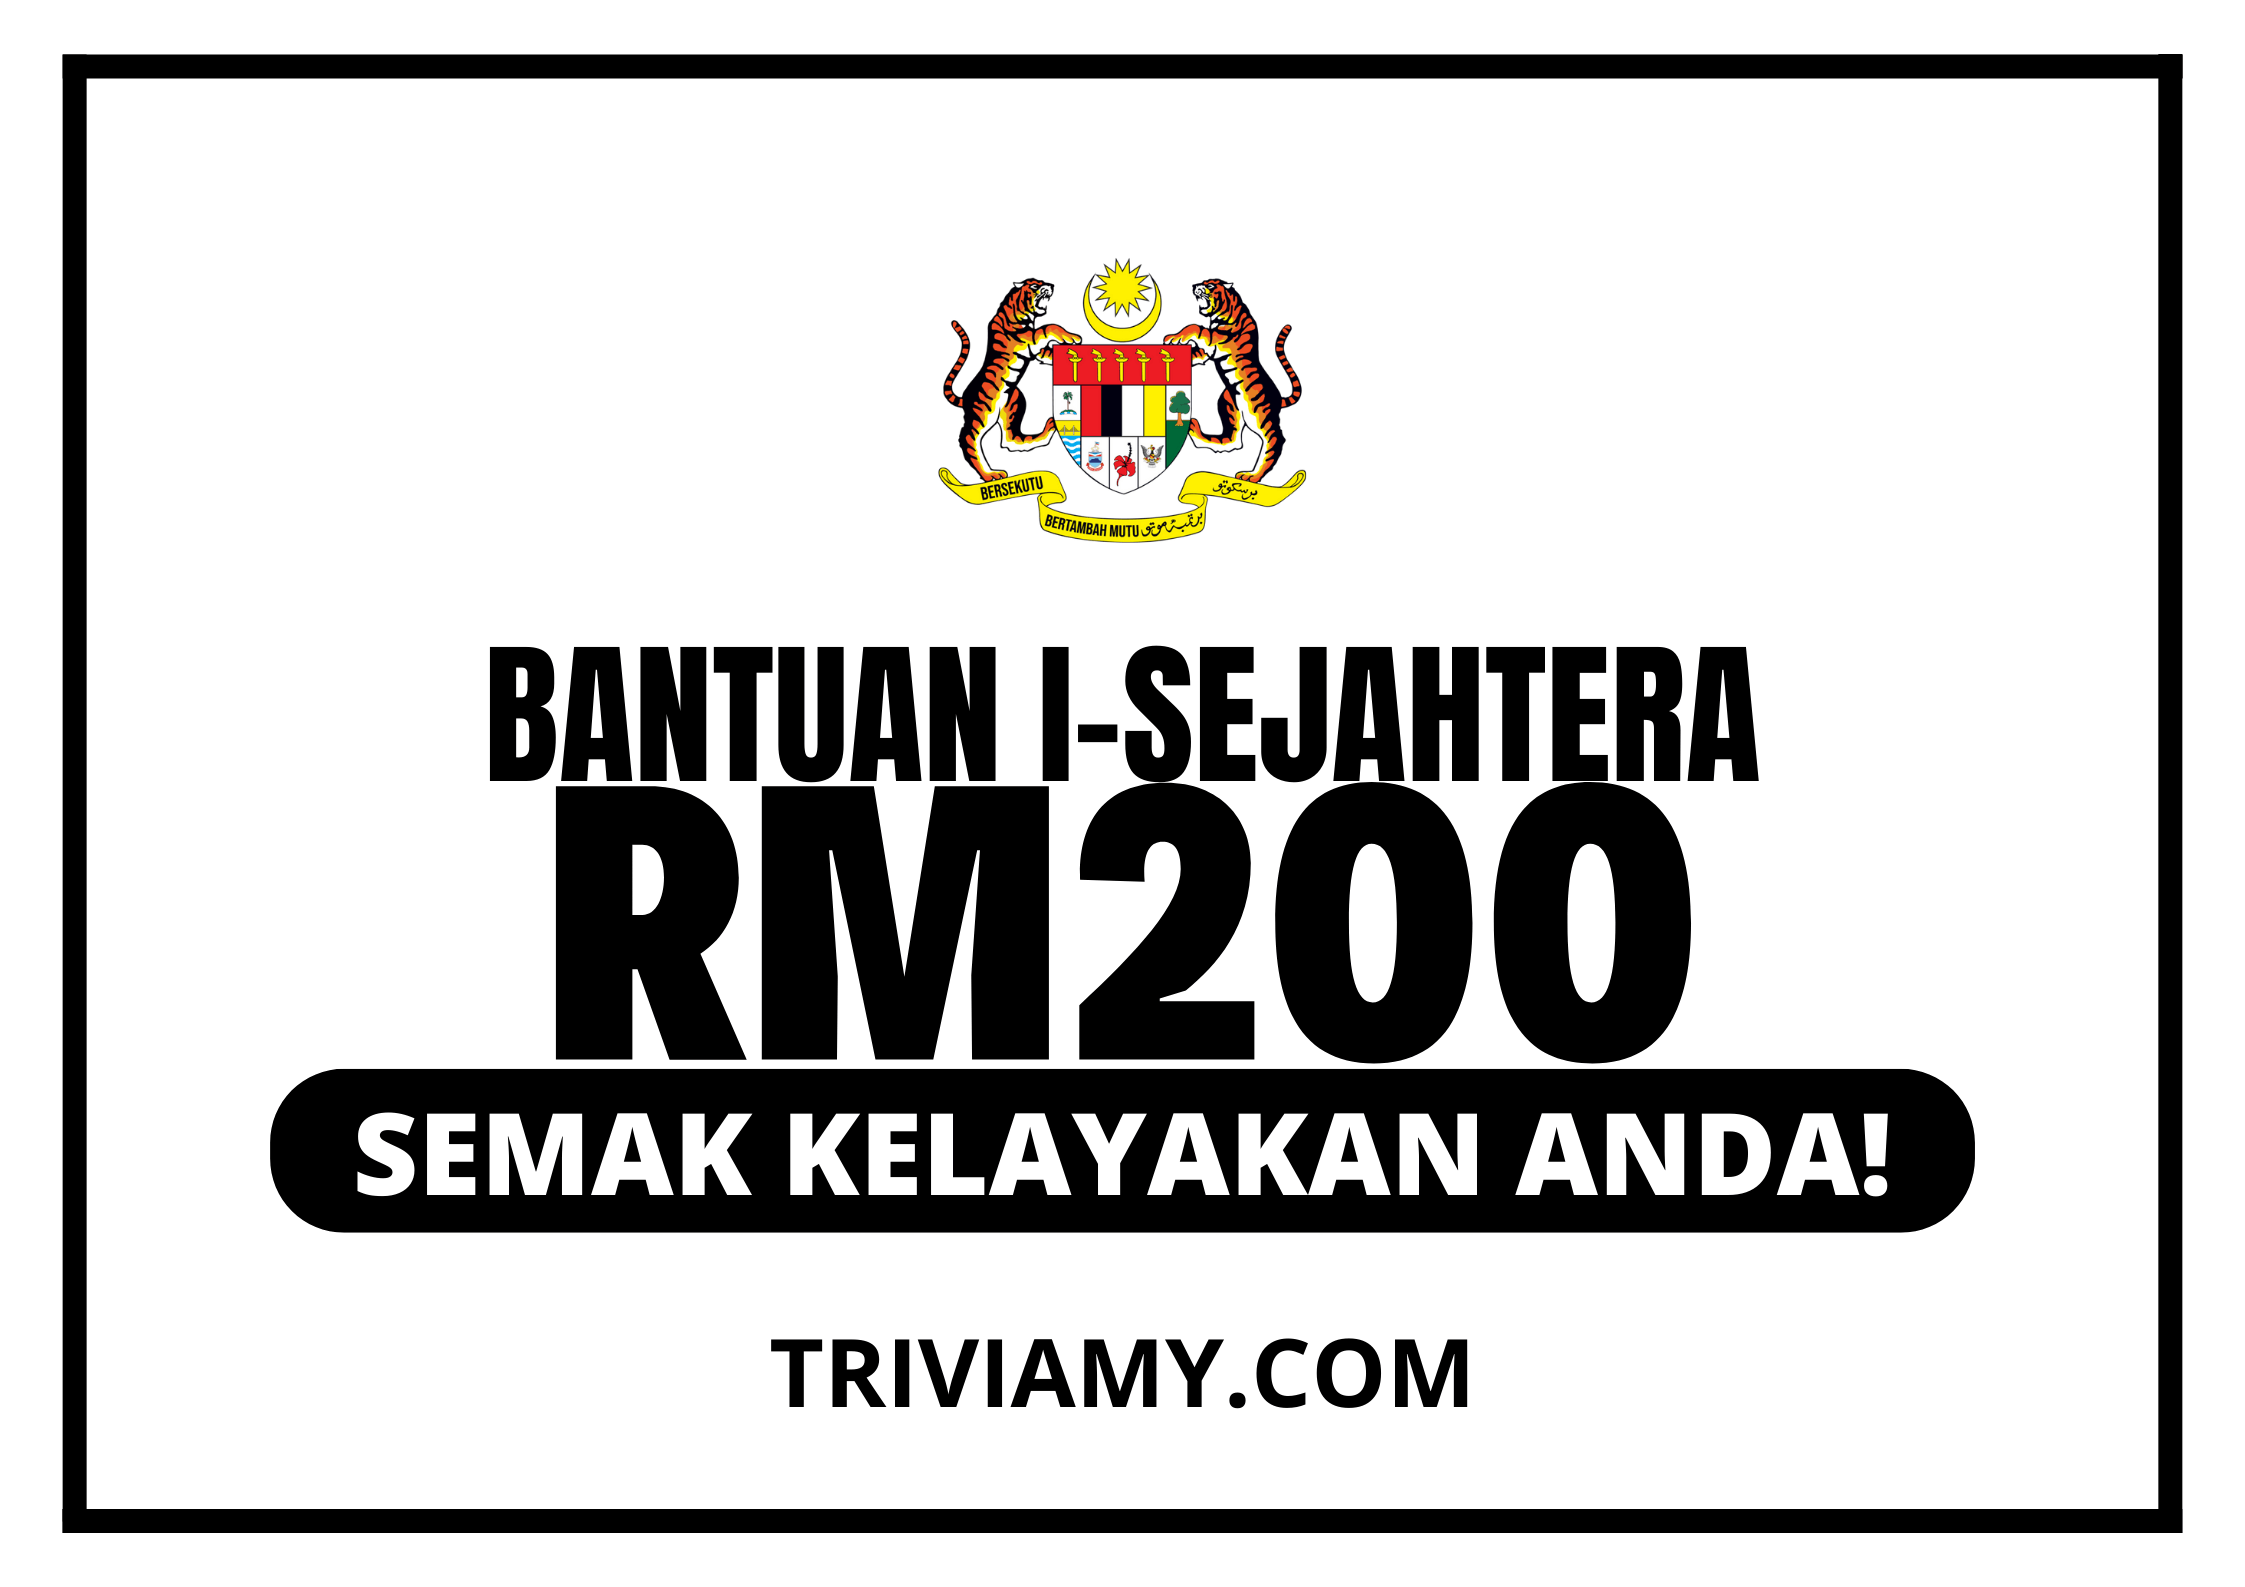 Bantuan i-Sejahtera RM200